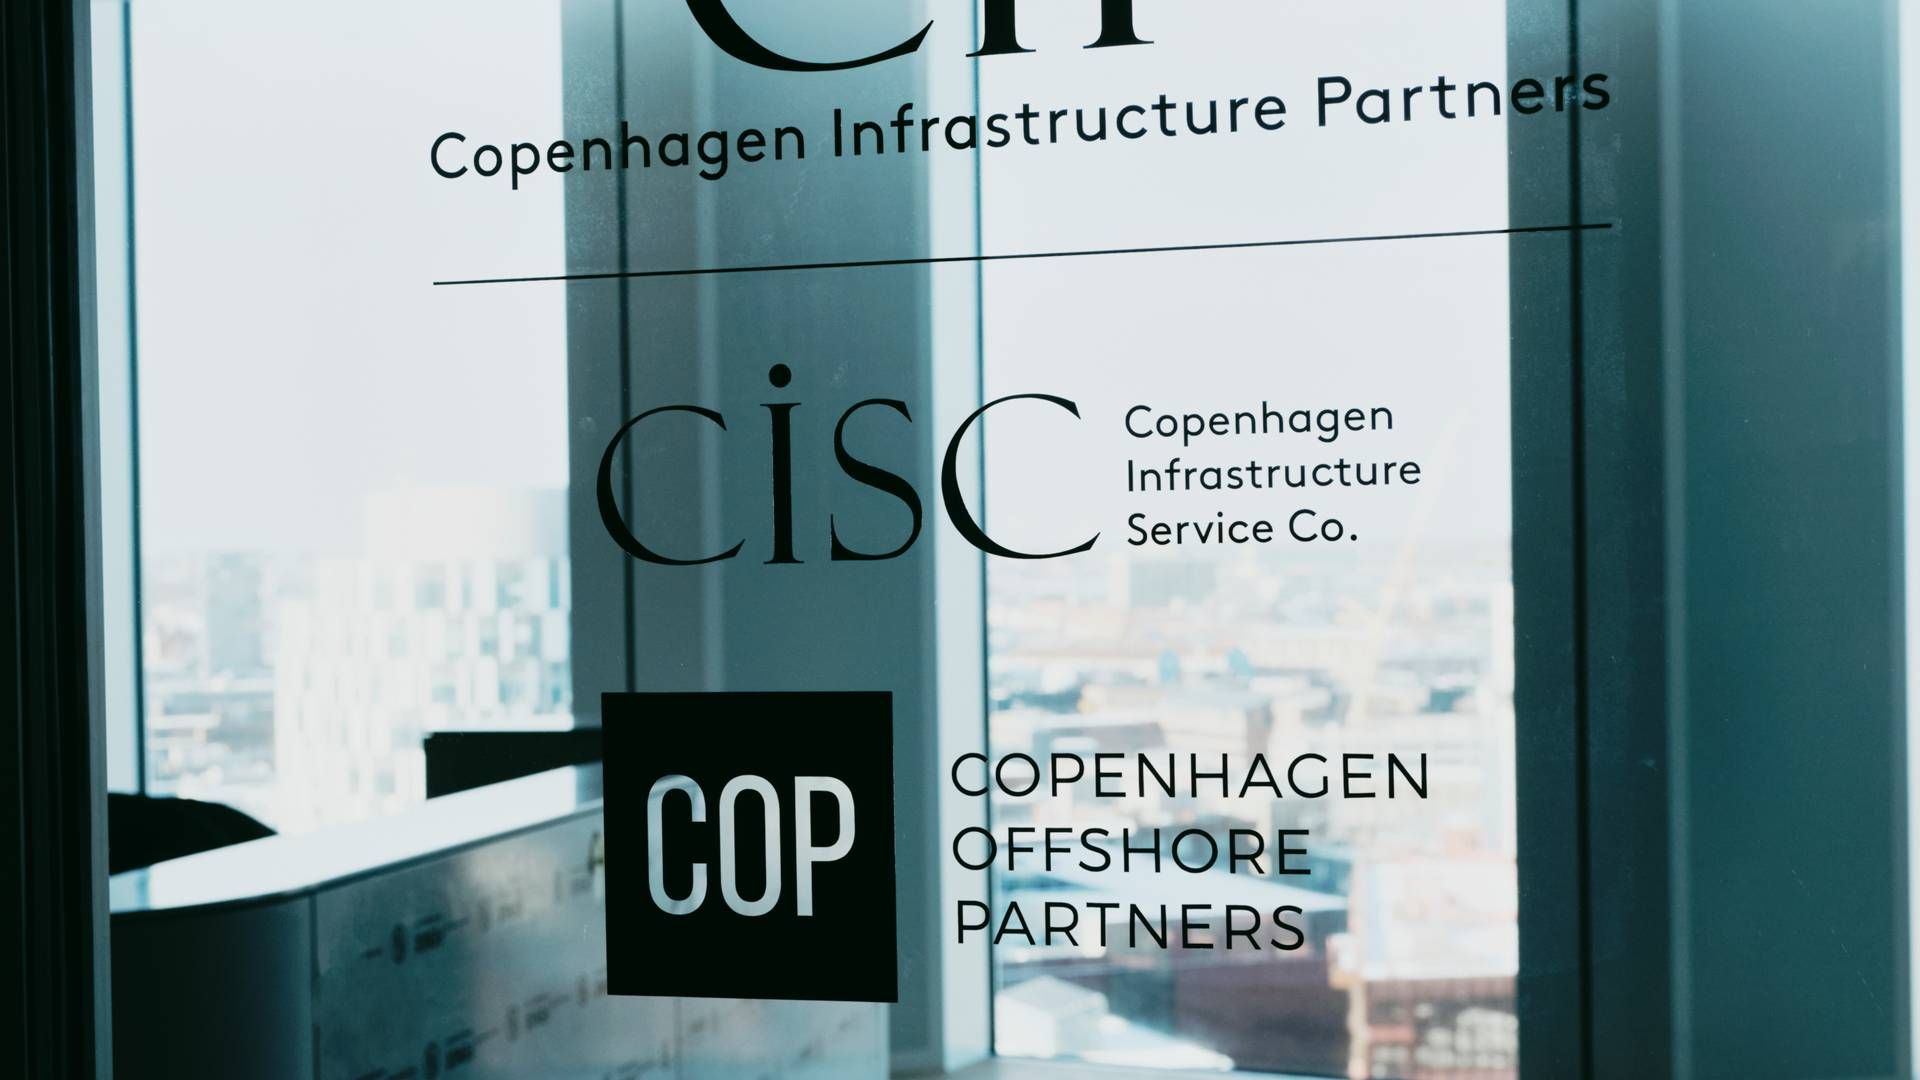 Photo: Copenhagen Infrastructure Partners